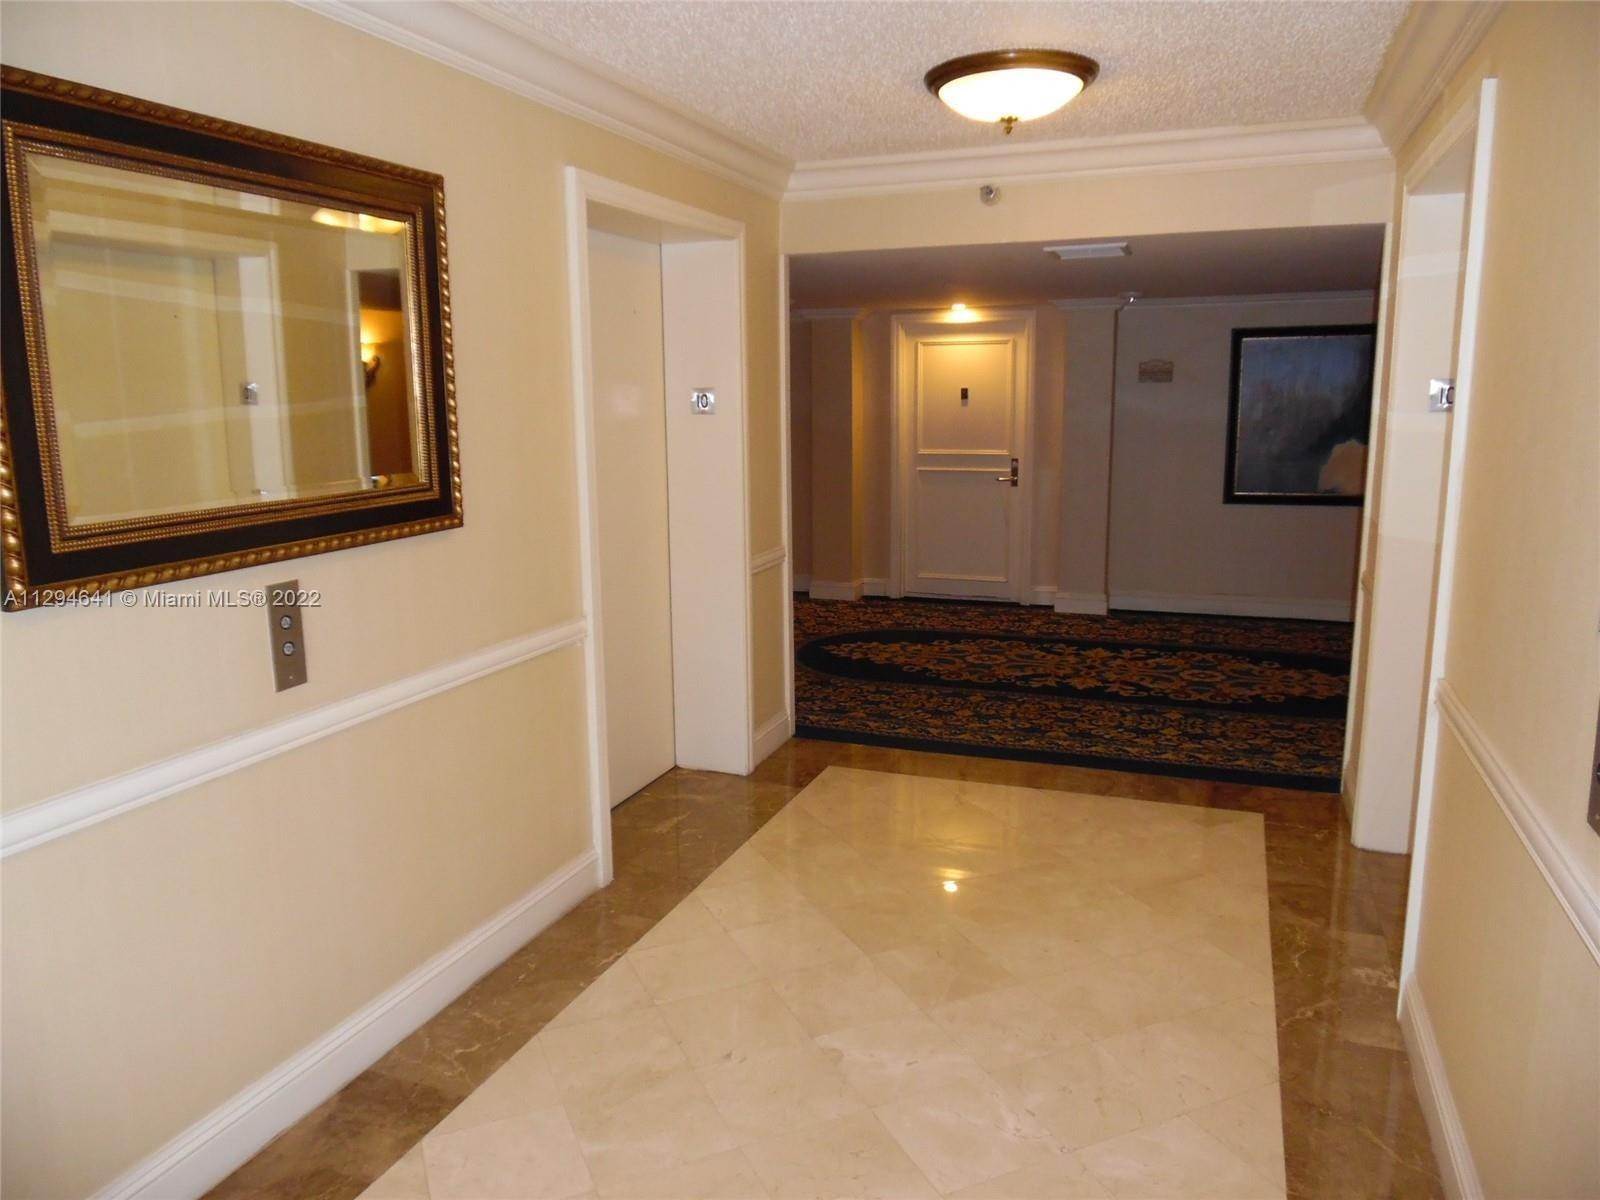 11. Condominium for Sale at Aventura, FL 33180